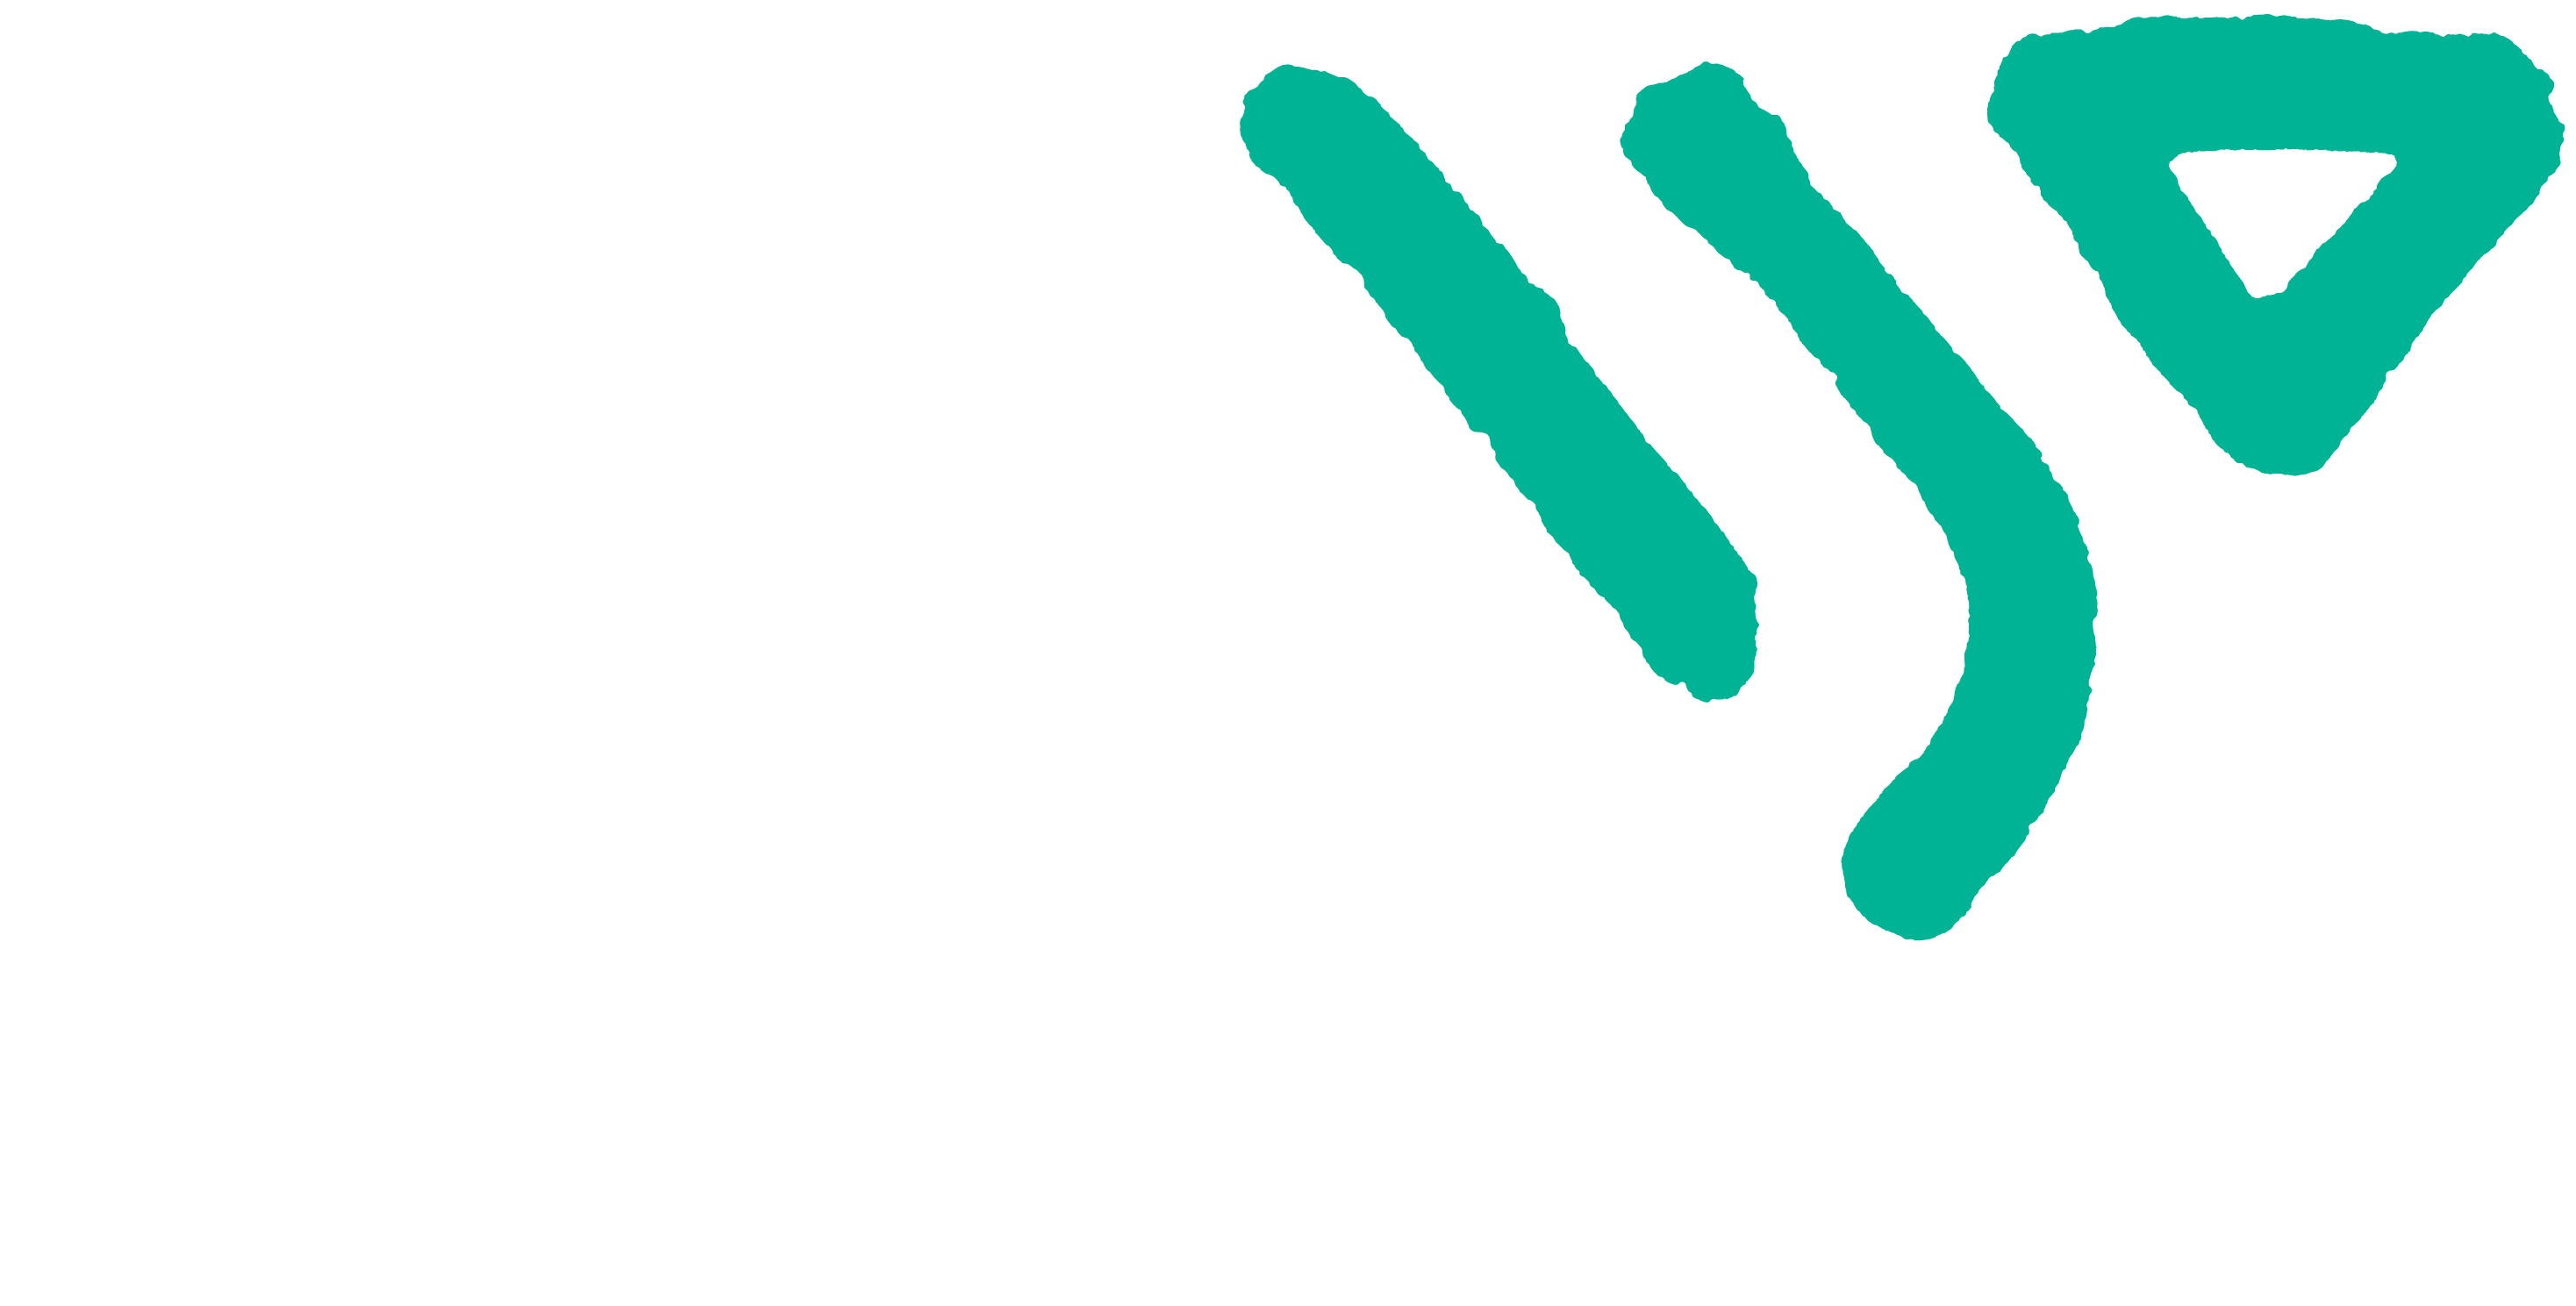 Weird Wiring Studio